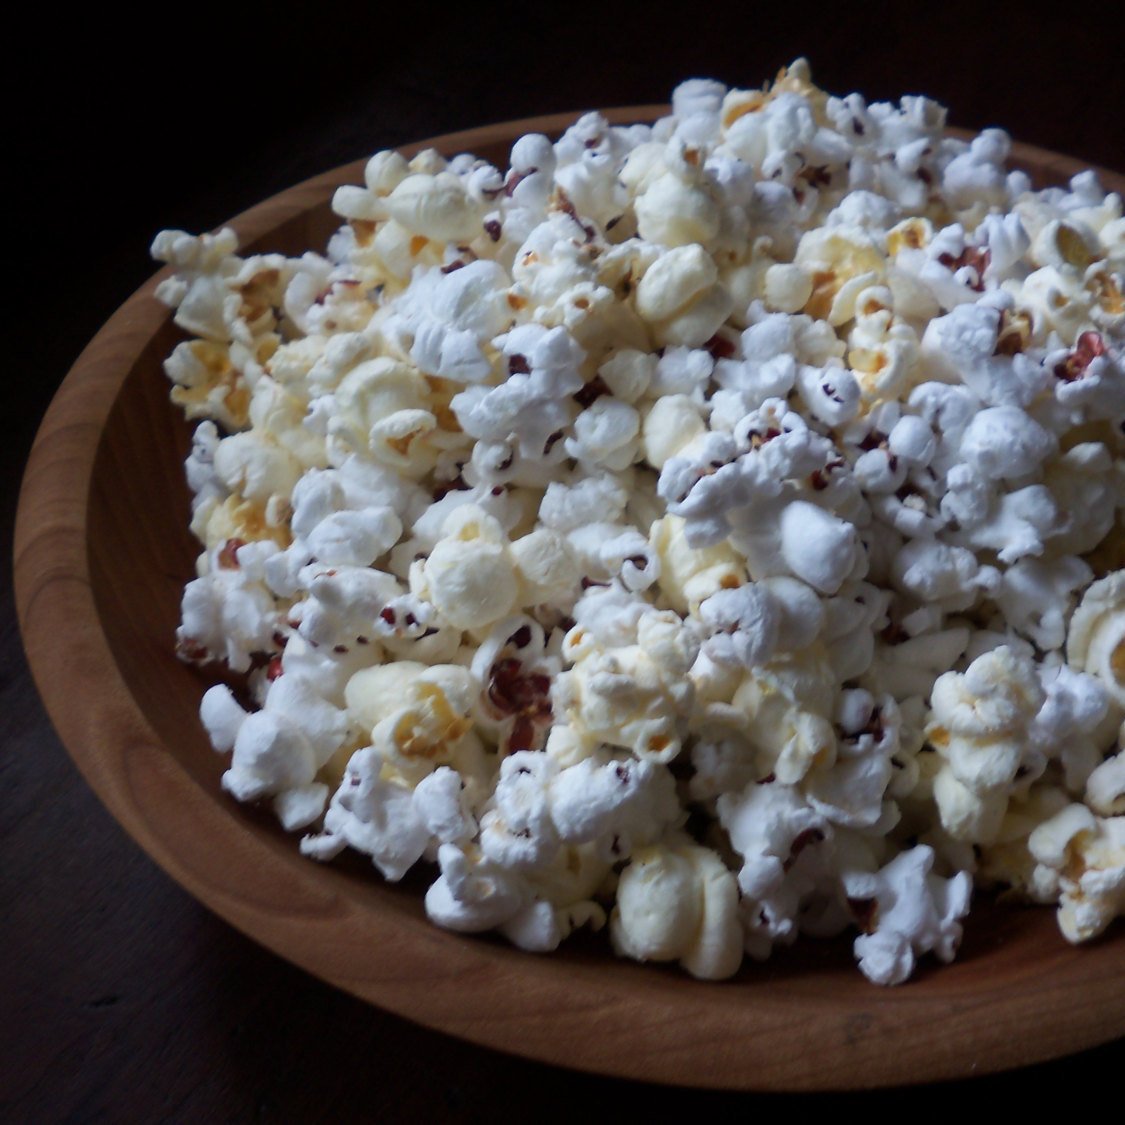 1/2 lb Karen's Gourmet Popcorn Kernel Mix